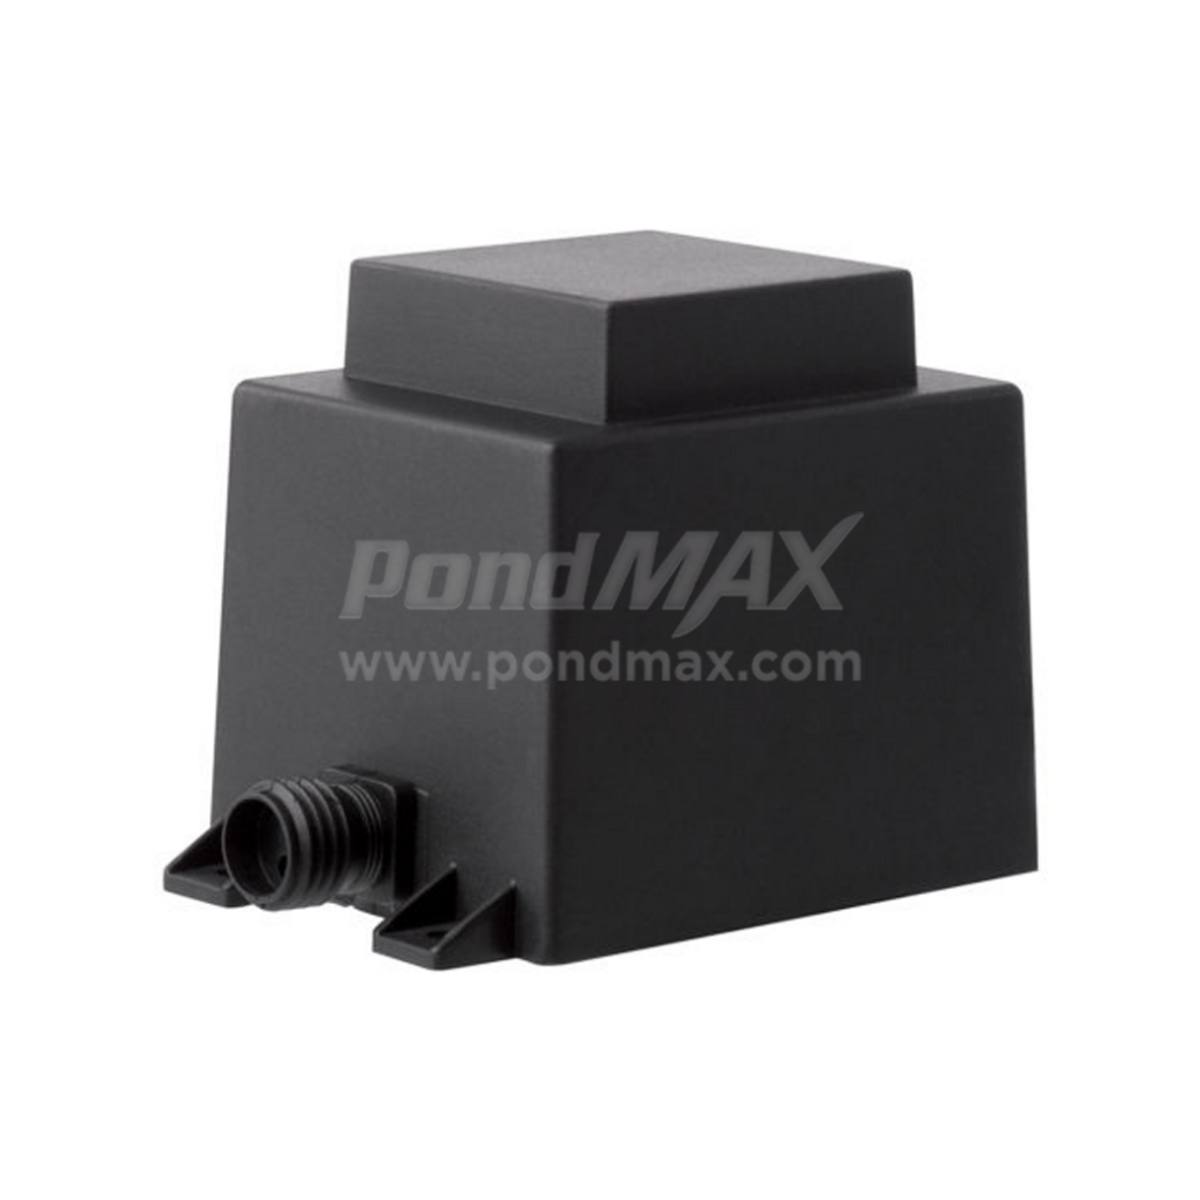 Pondmax Low Voltage Indoor/ Outdoor Transformer